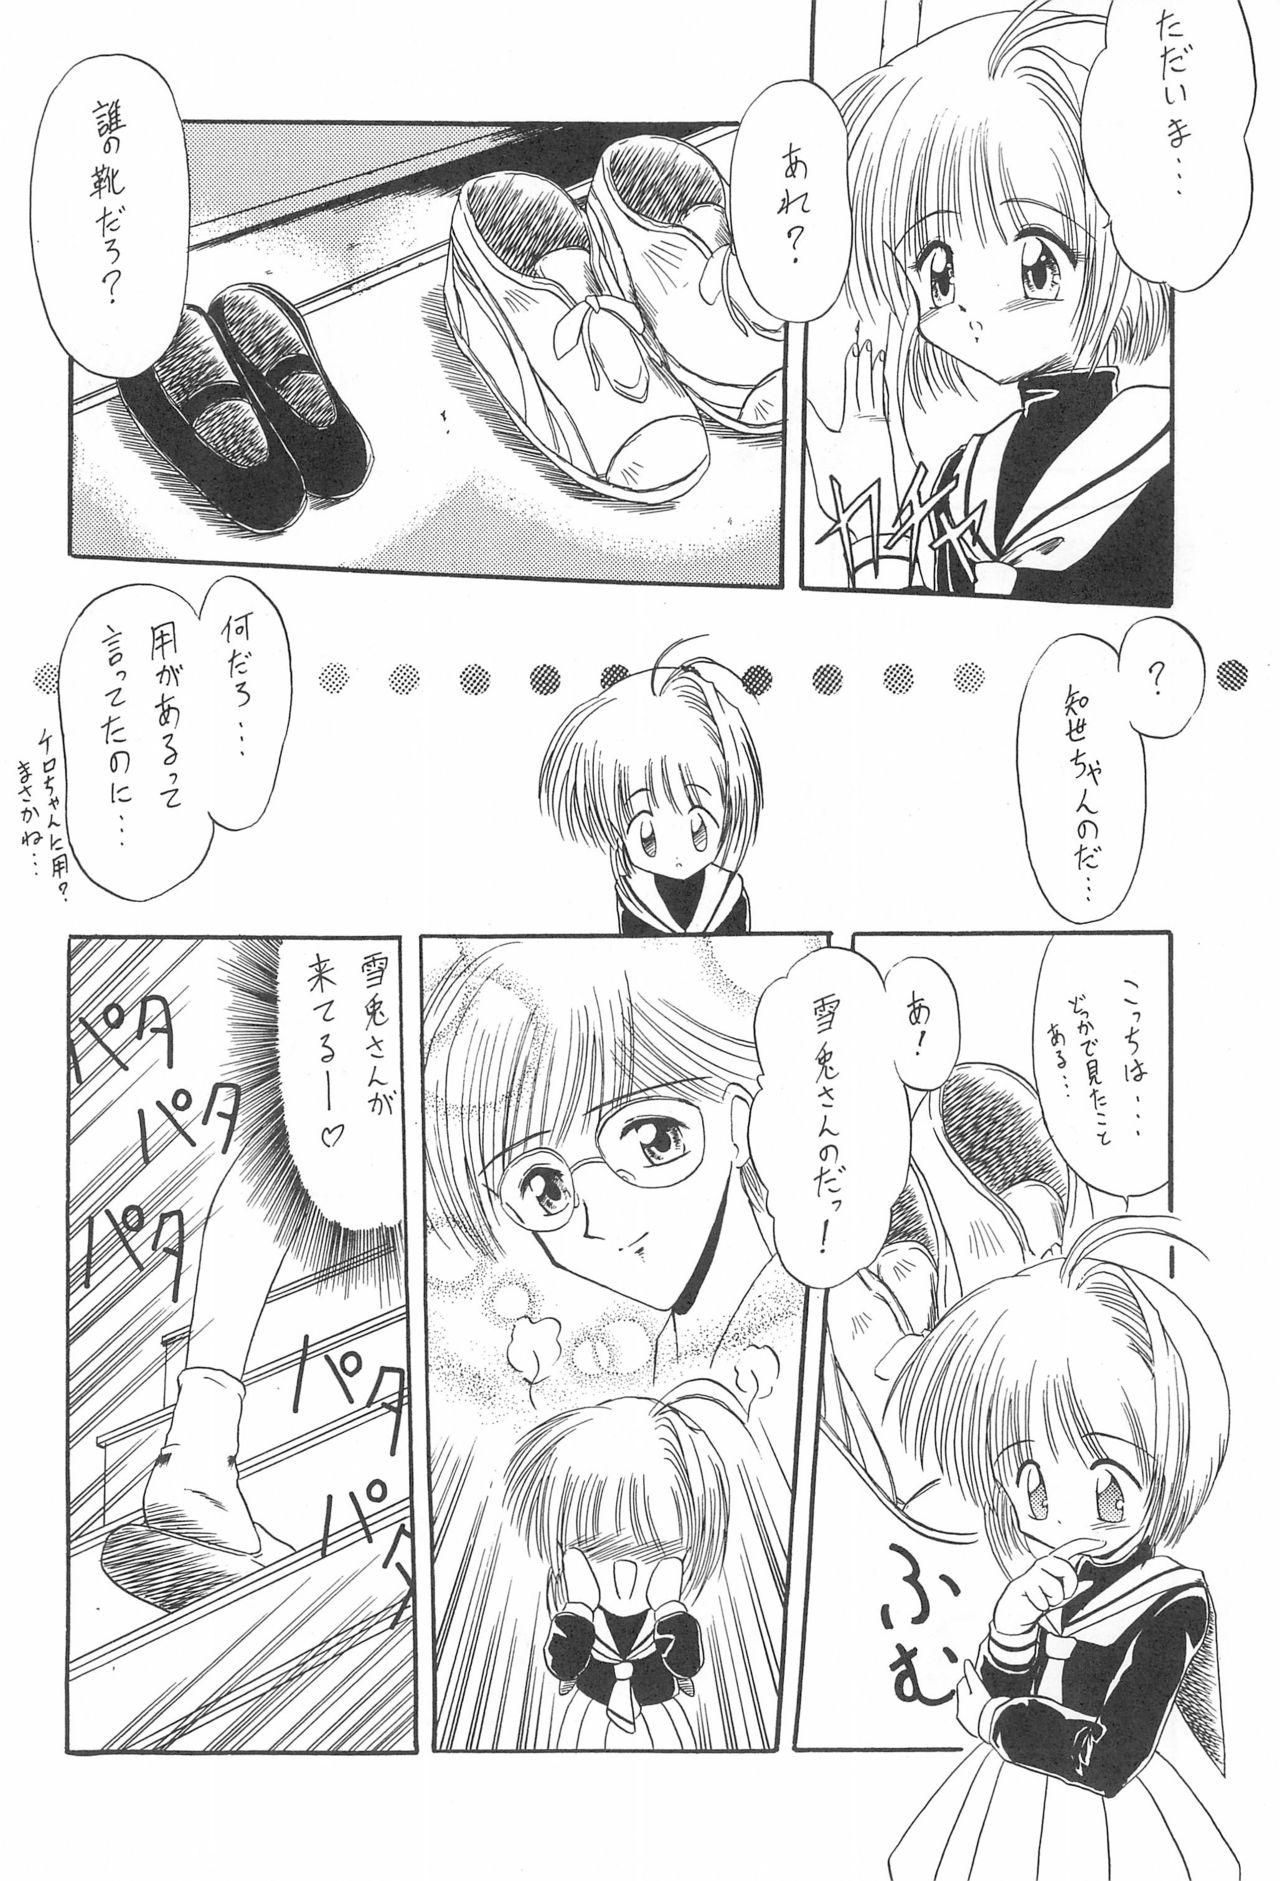 Gayhardcore Rakuen Toshi 4 - Cardcaptor sakura Cousin - Page 8